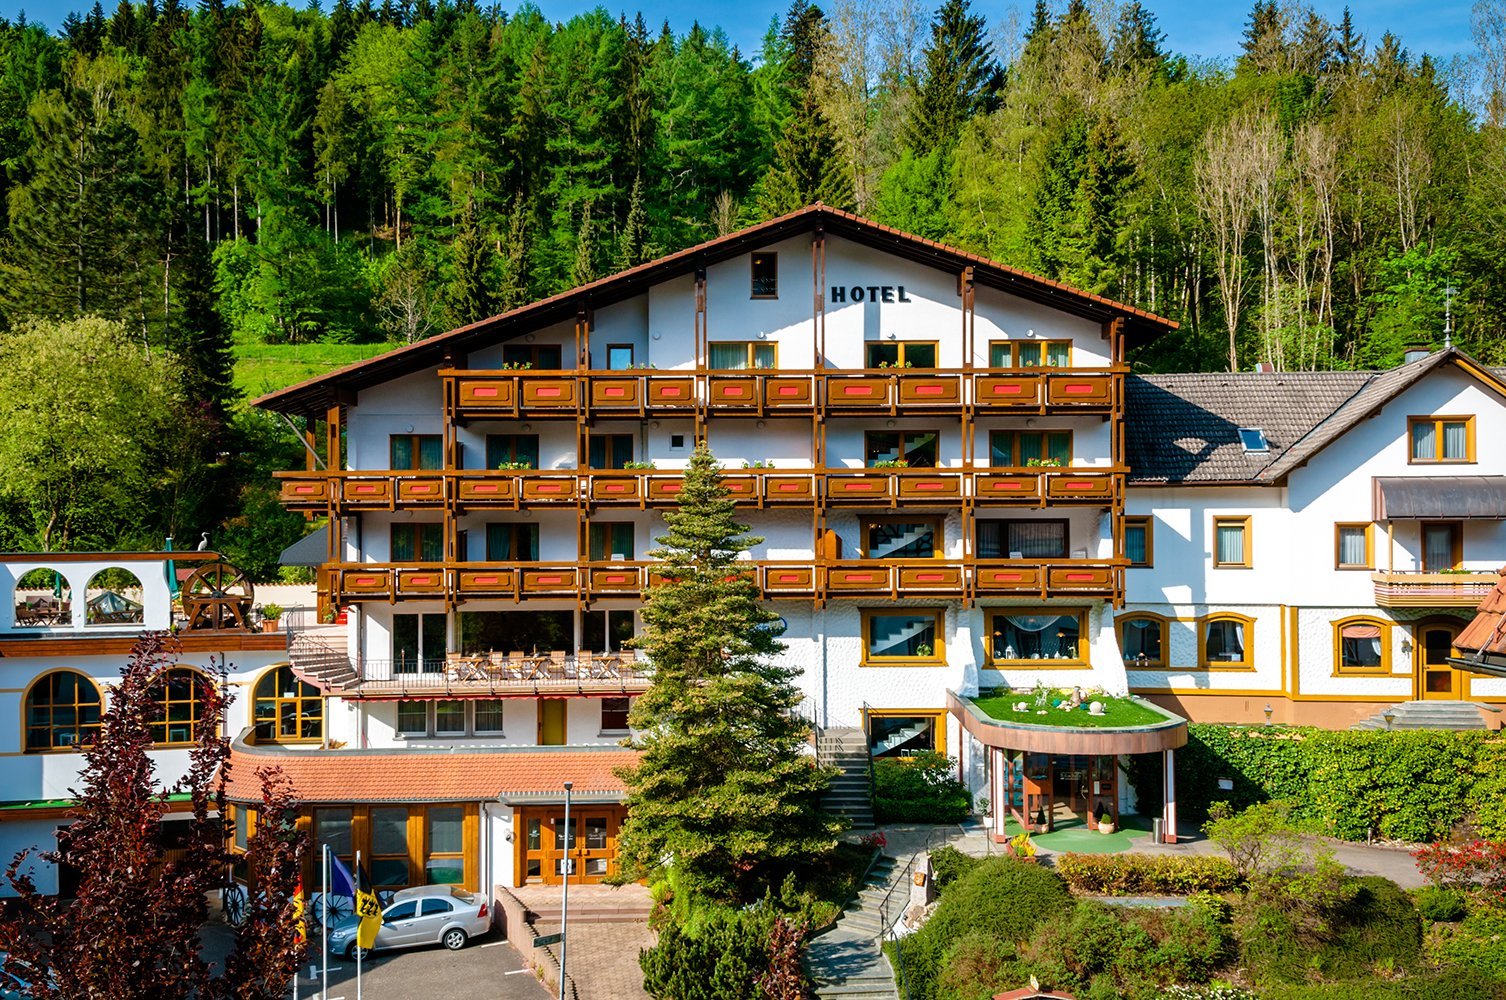 2 Tage Solo-Alltagsrast® in Holzschuhs Schwarzwaldhotel – Holzschuhs Schwarzwaldhotel (4 Sterne) in Baiersbronn, Baden-Württemberg inkl. Halbpension